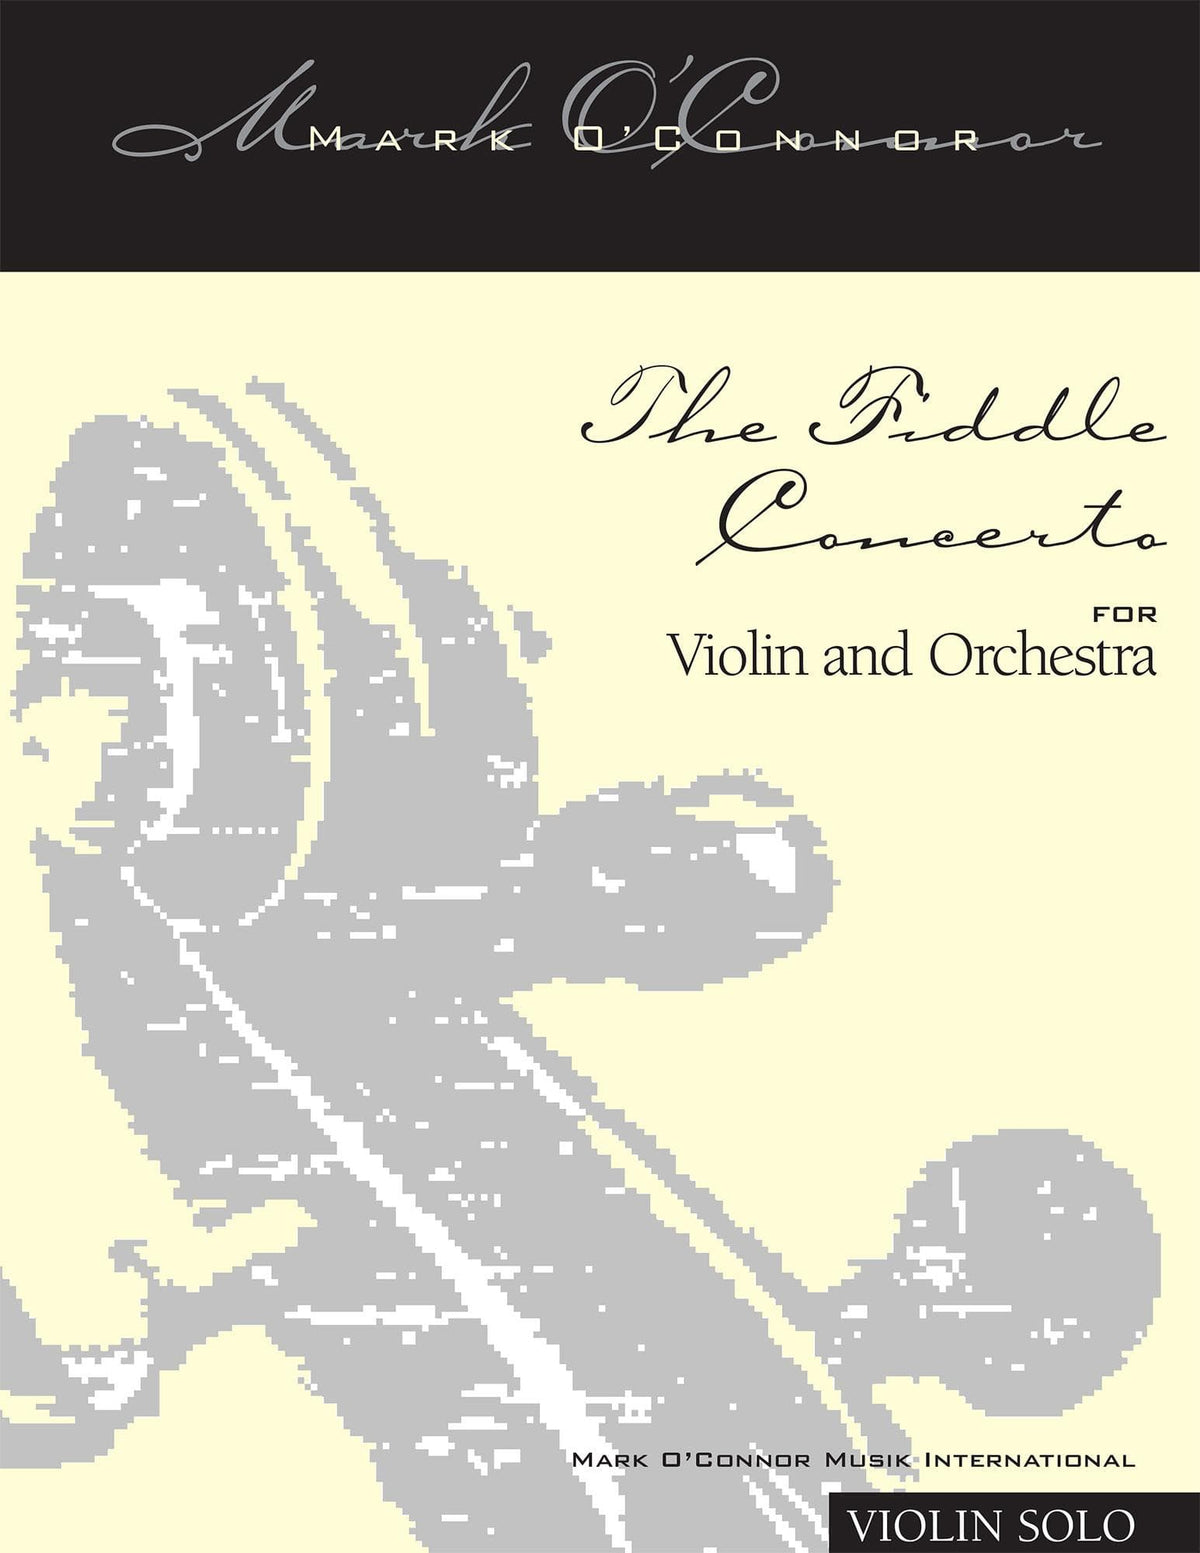 O'Connor, Mark - The FIDDLE CONCERTO for Violin and Orchestra - Violin Solo - Digital Download